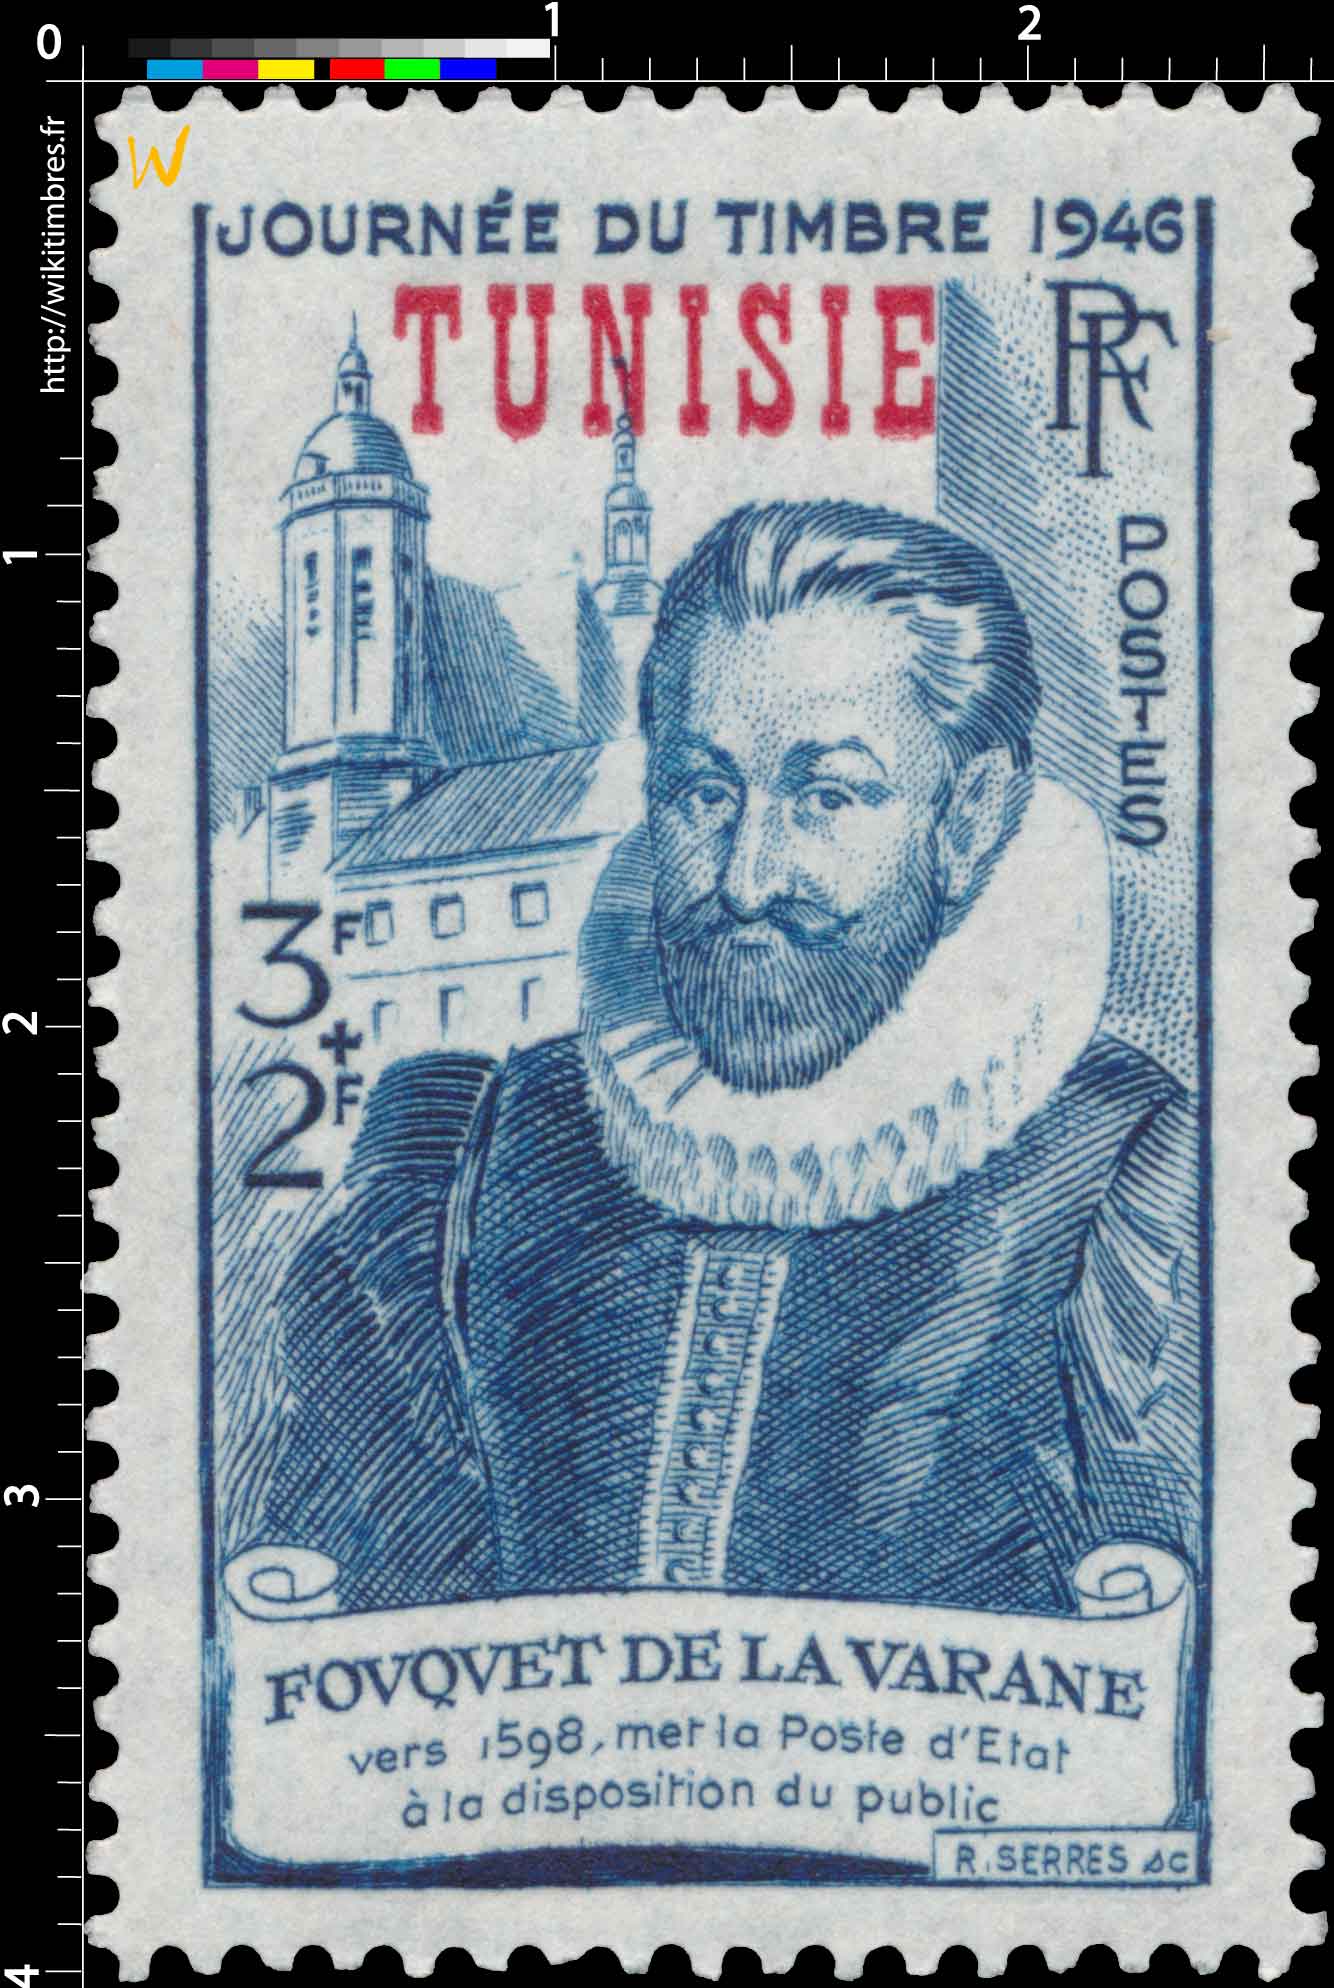 Tunisie - JOURNÉE DU TIMBRE 1946 FOUQUET DE LA VARANE vers 1598, met la poste d'État à la disposition du public